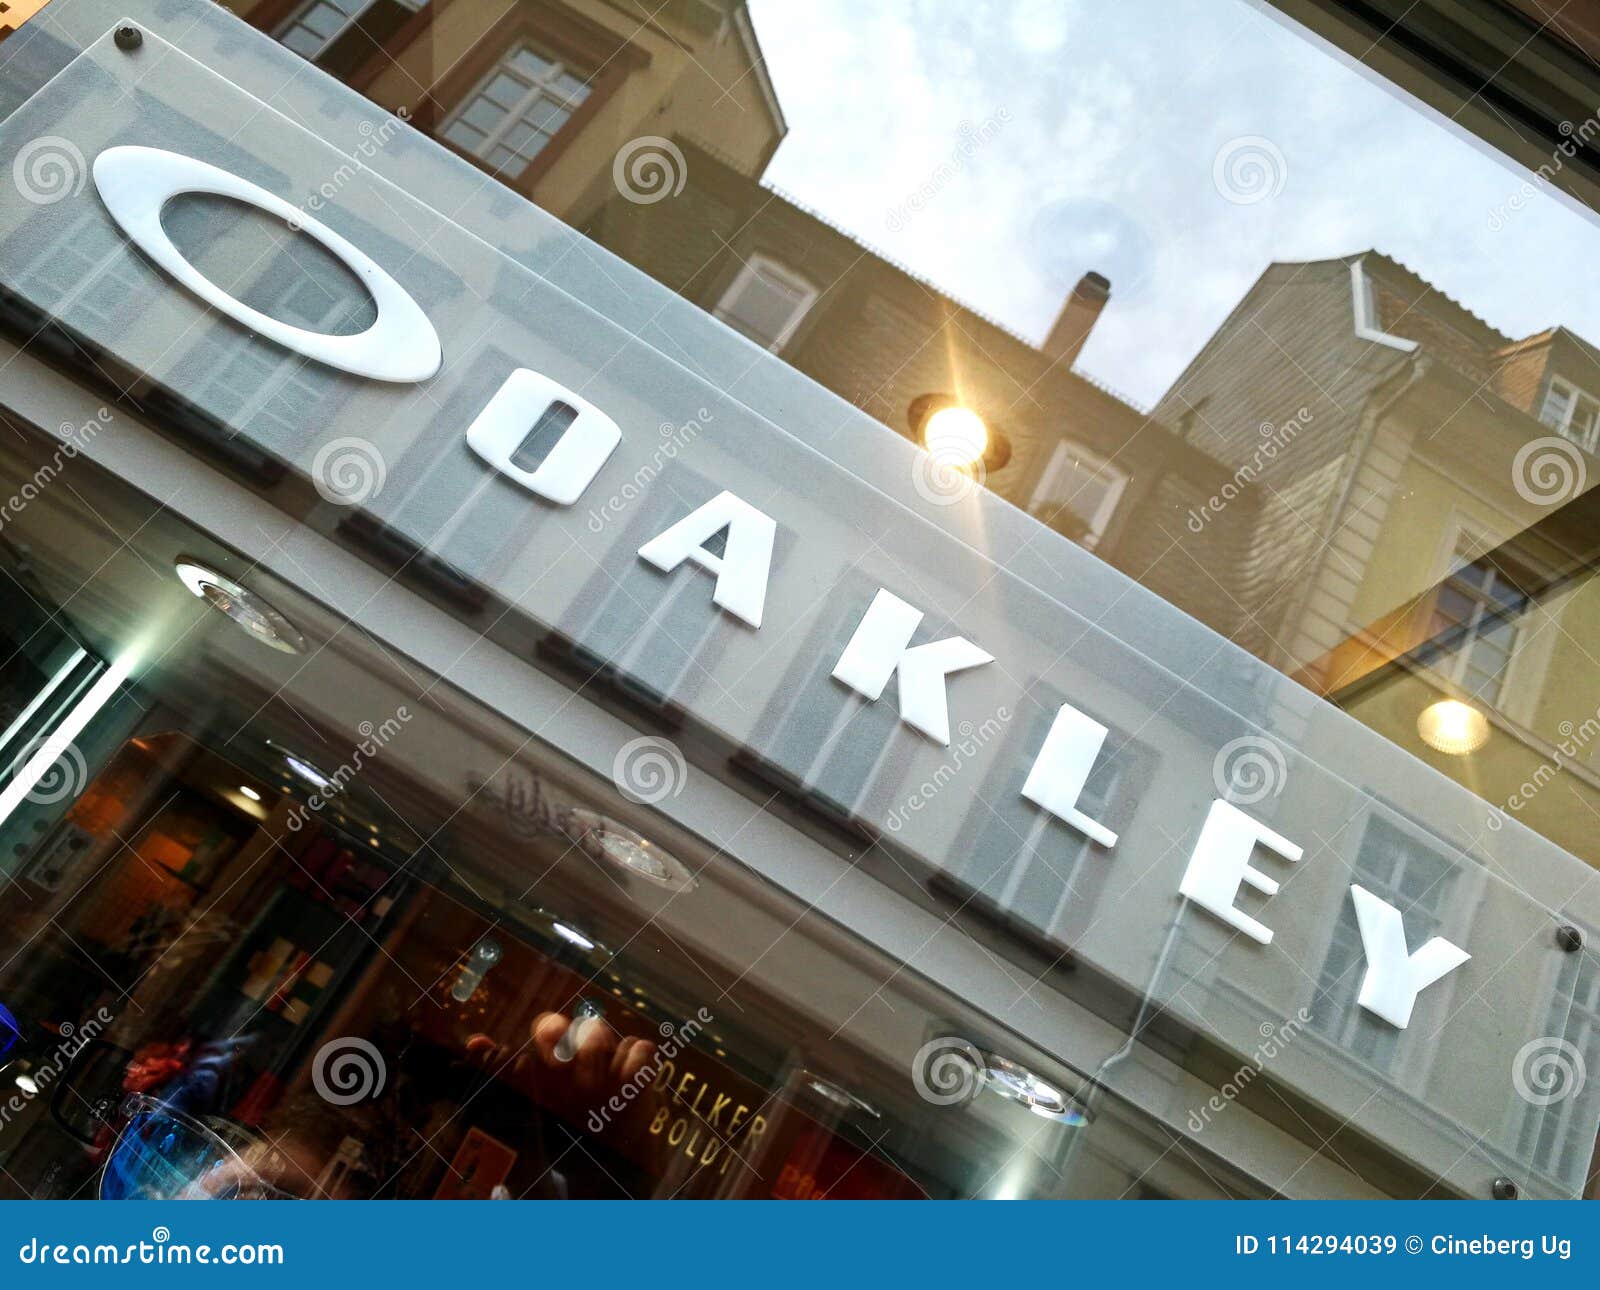 oakley company